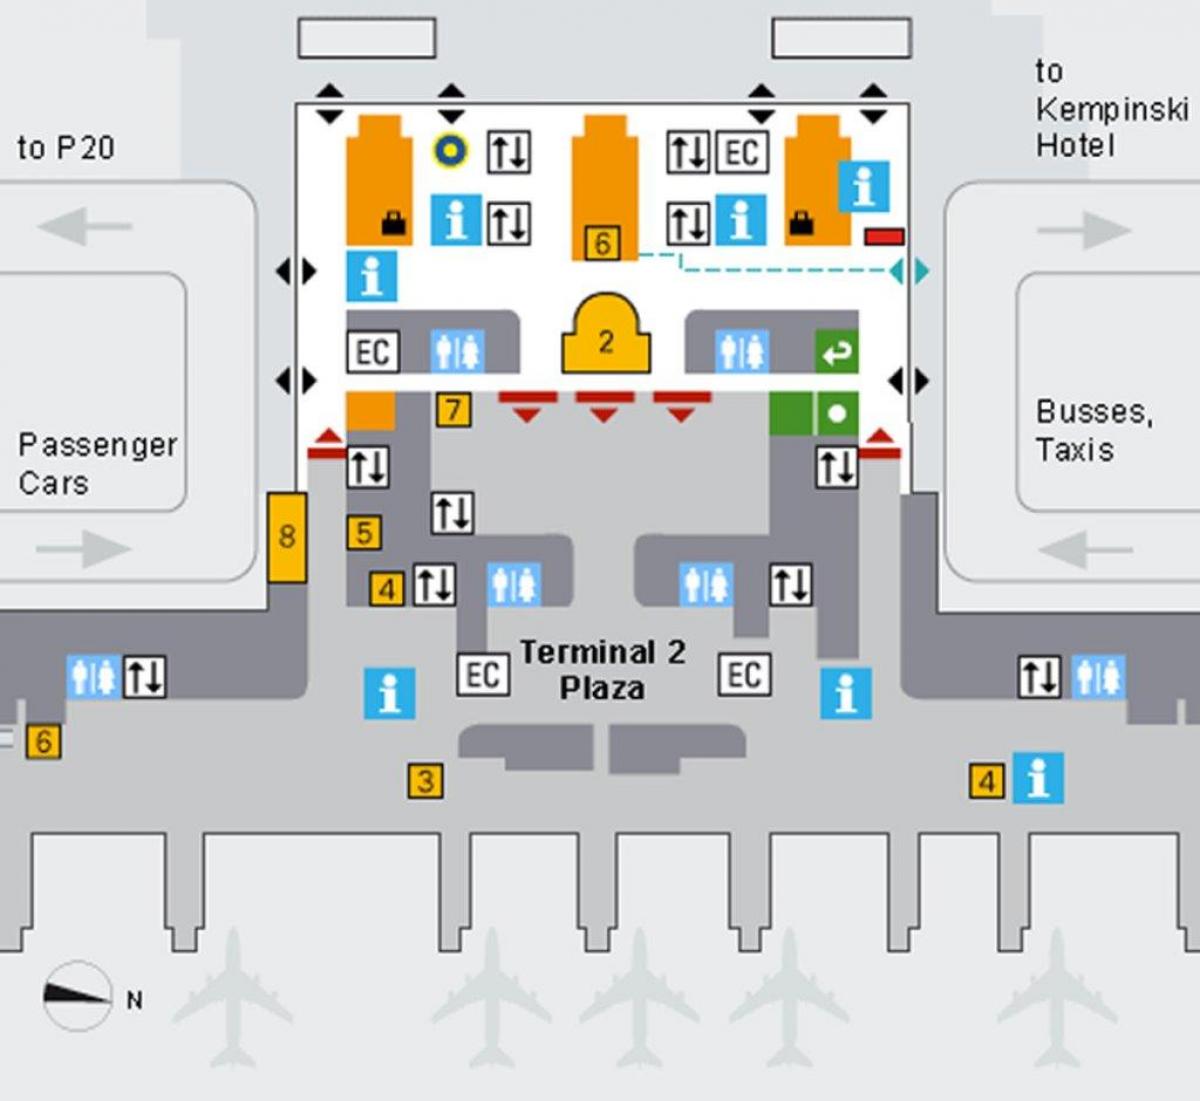 Схема аэропорта Мюнхена прибытие